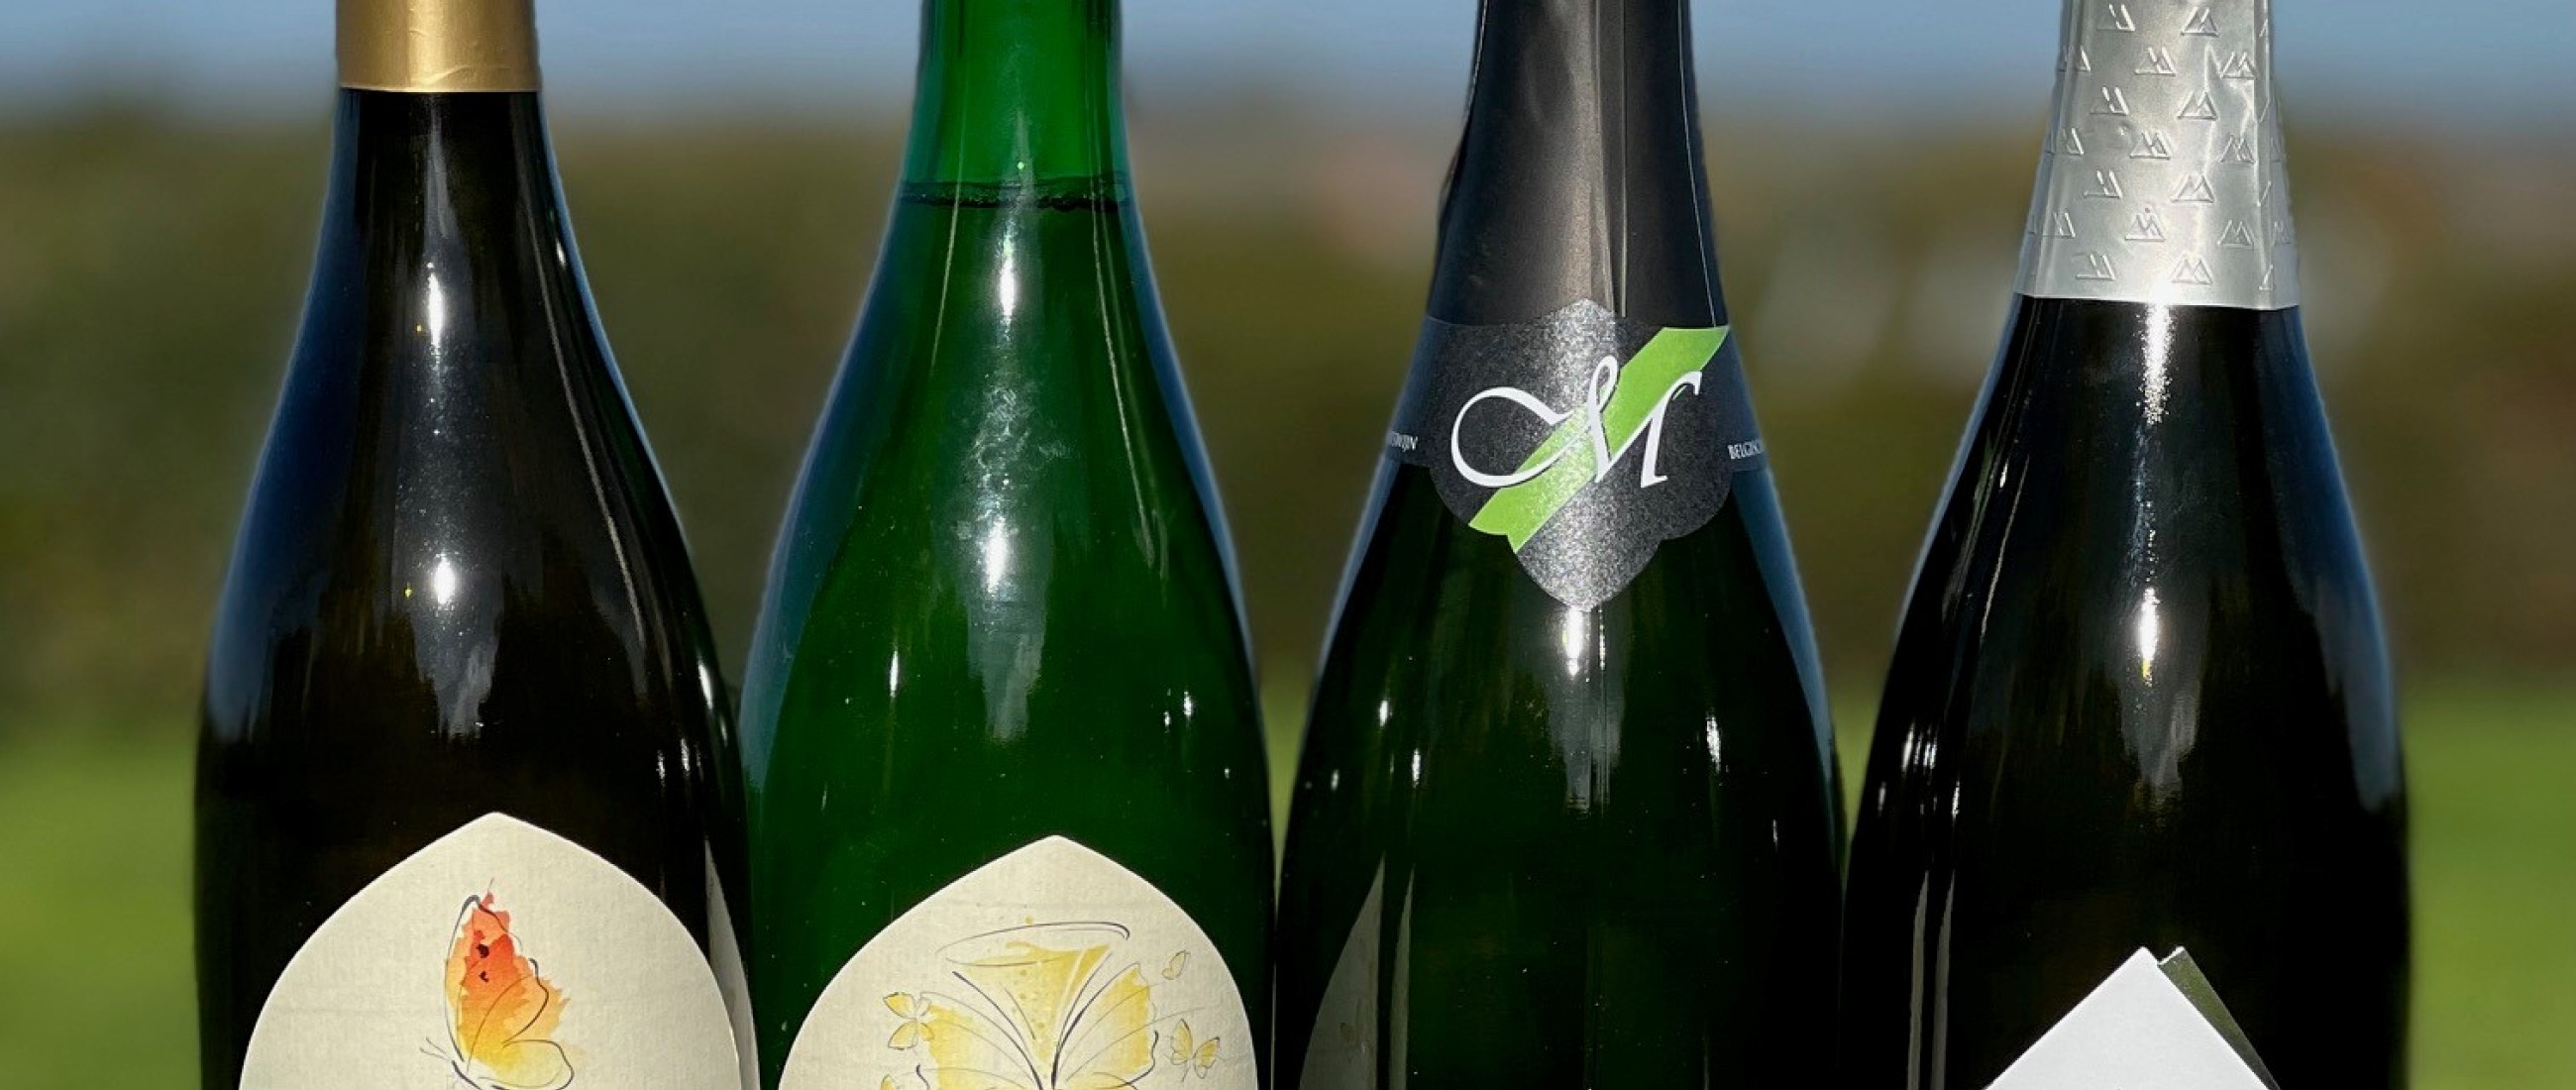 medaille winnaars beste Belgische wijn verkiezing 2022